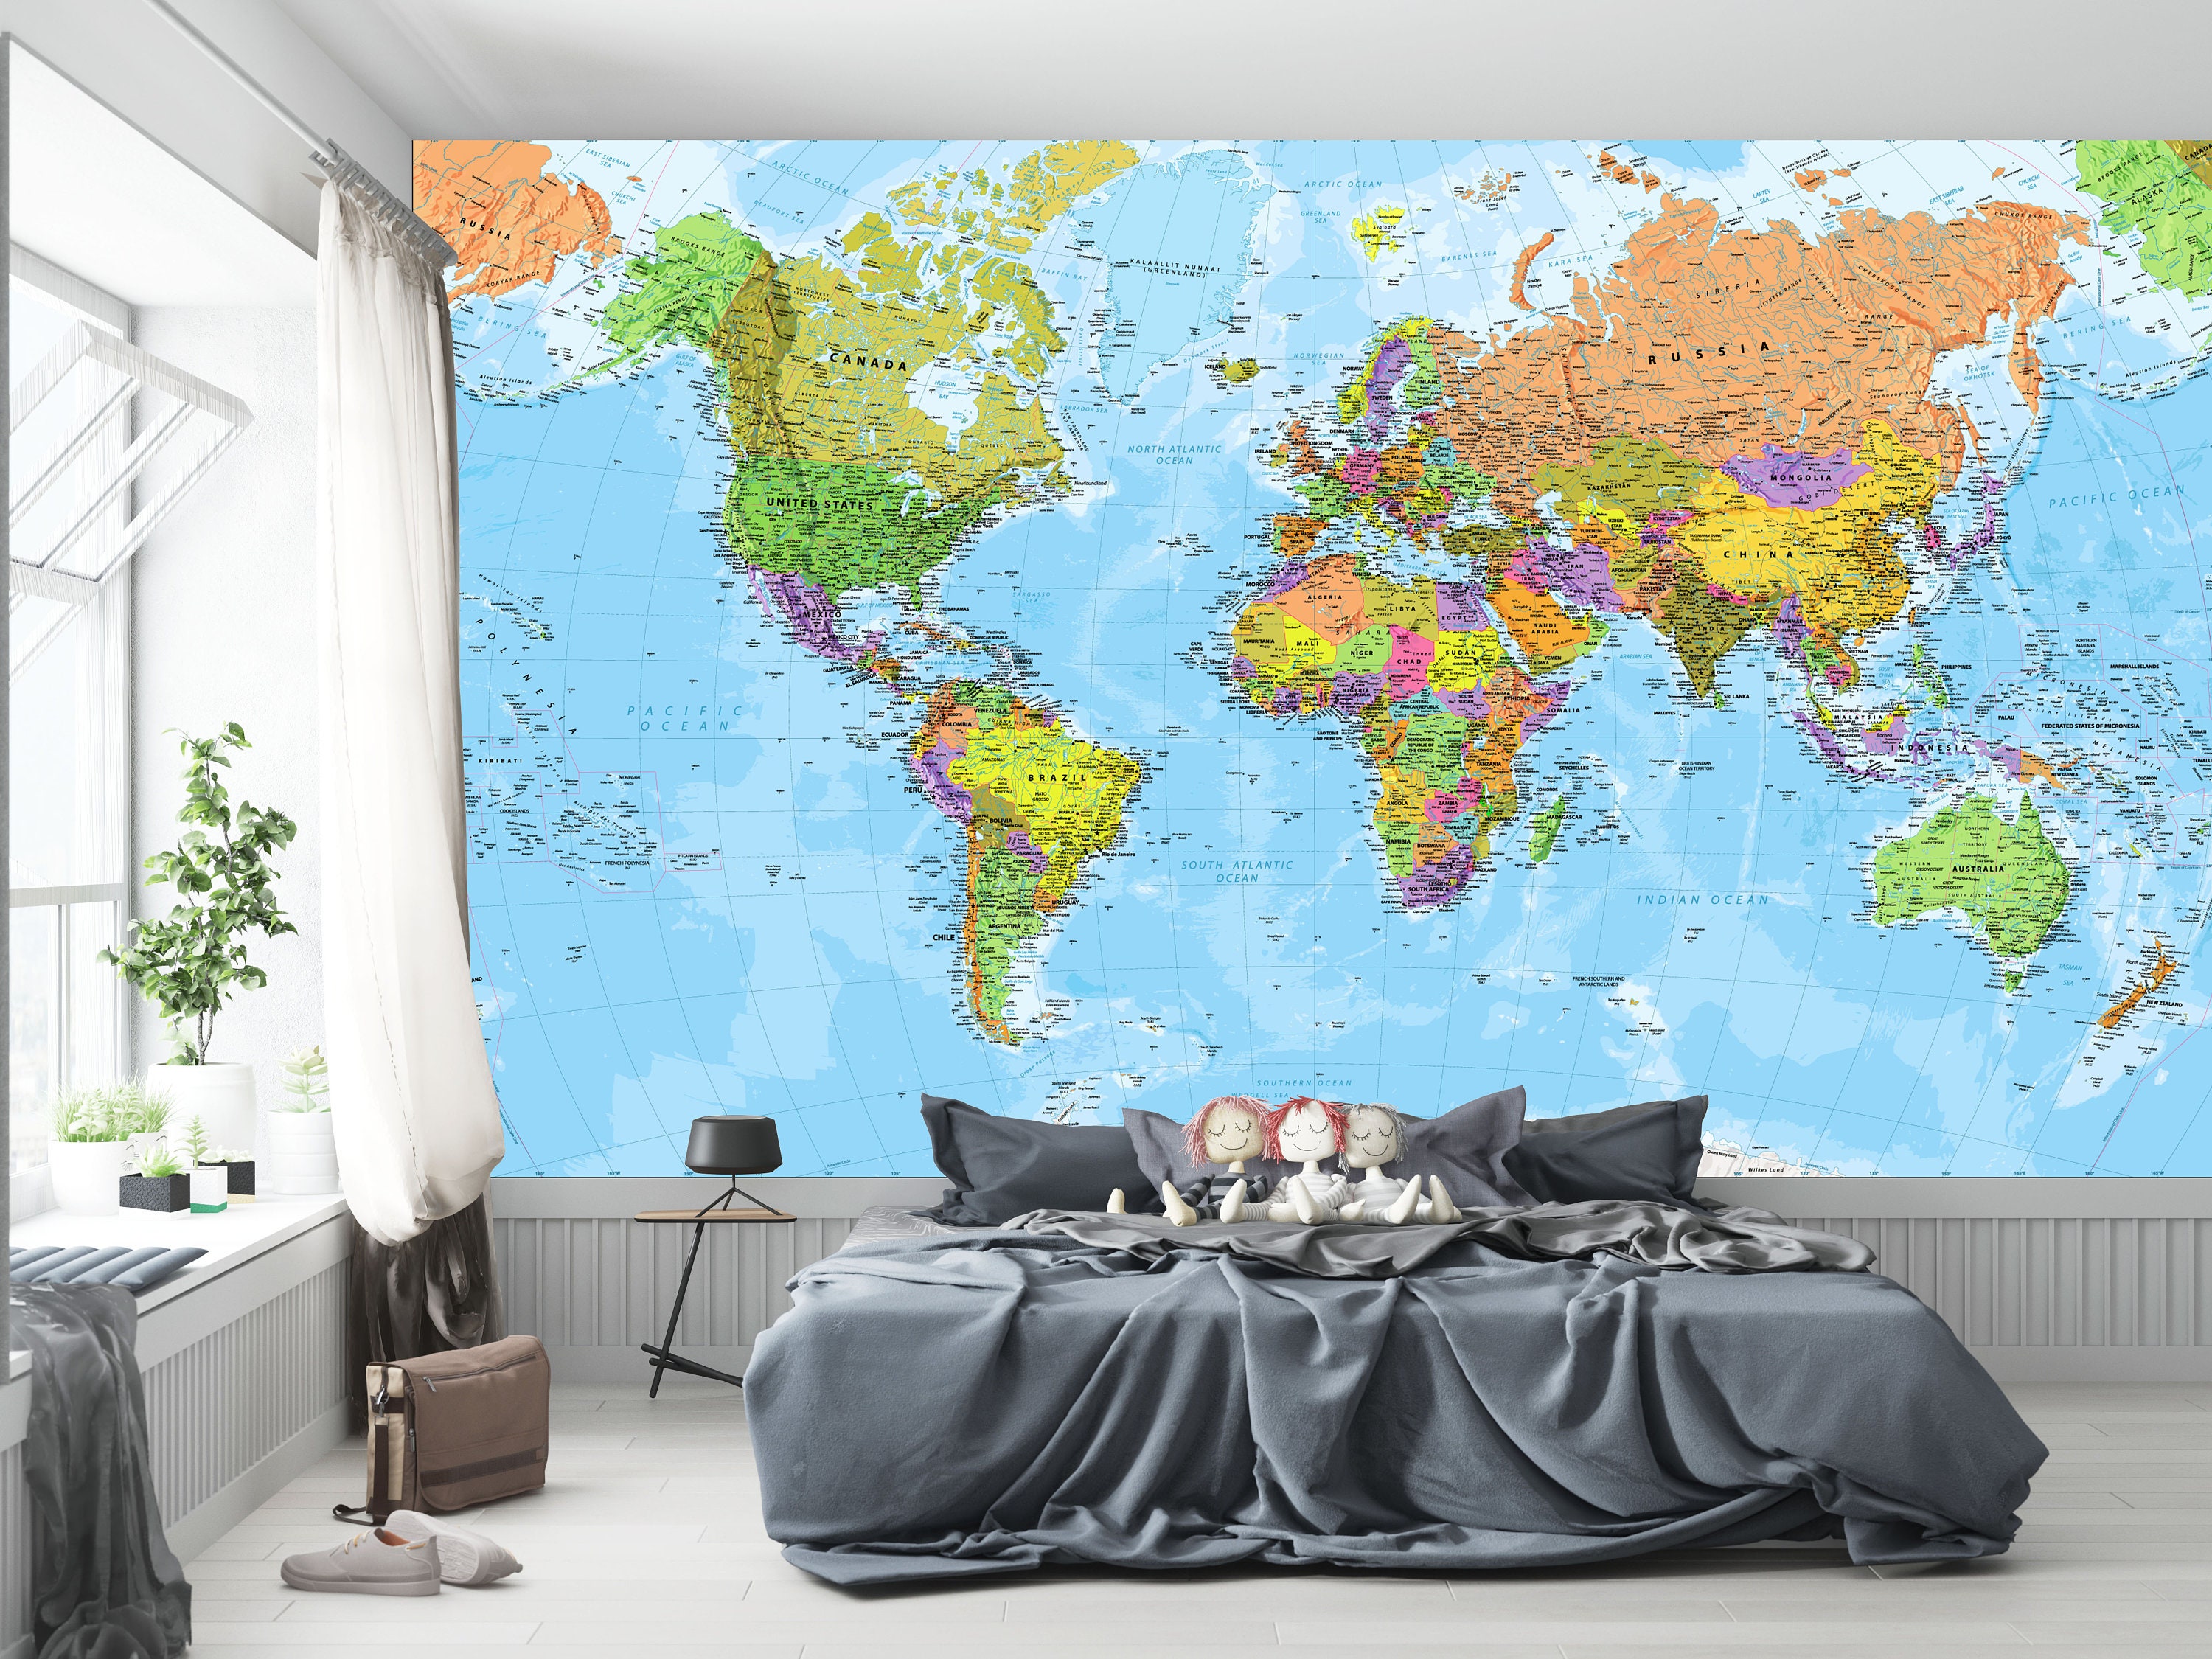 World Atlas Map Wall Sticker  TenStickers